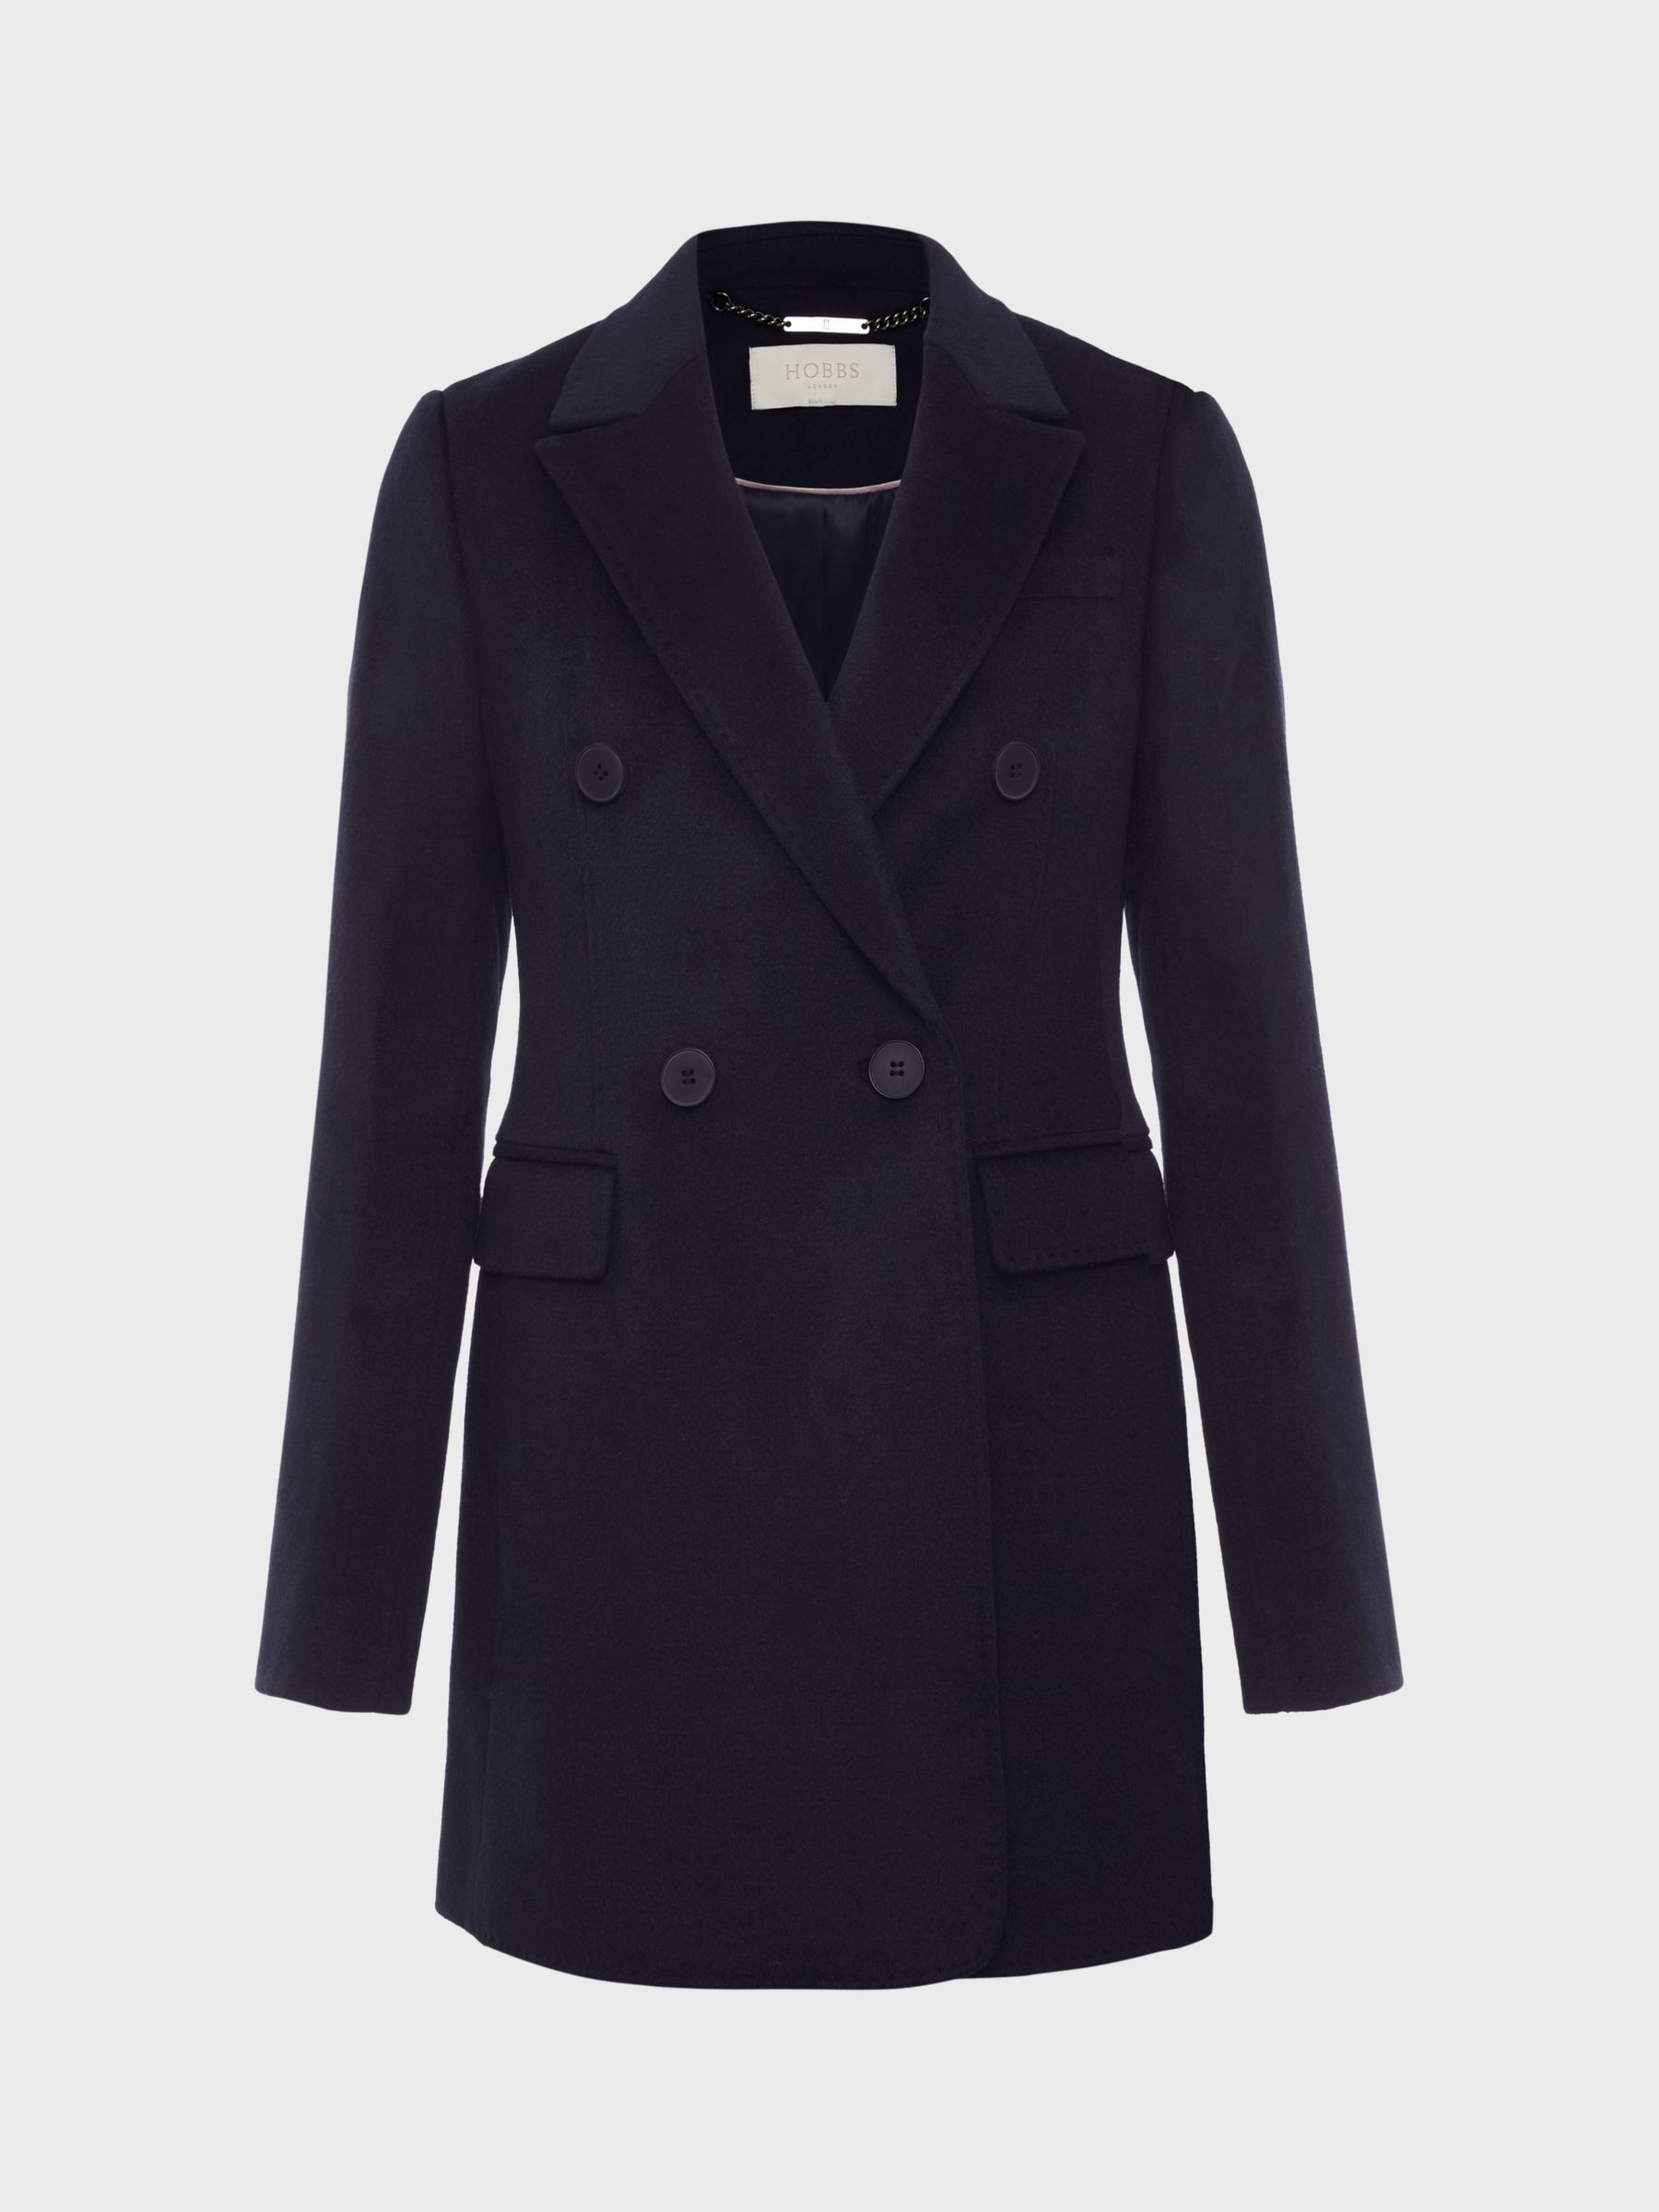 Buy Hobbs Skye Wool Blend Coat, Navy Online at johnlewis.com